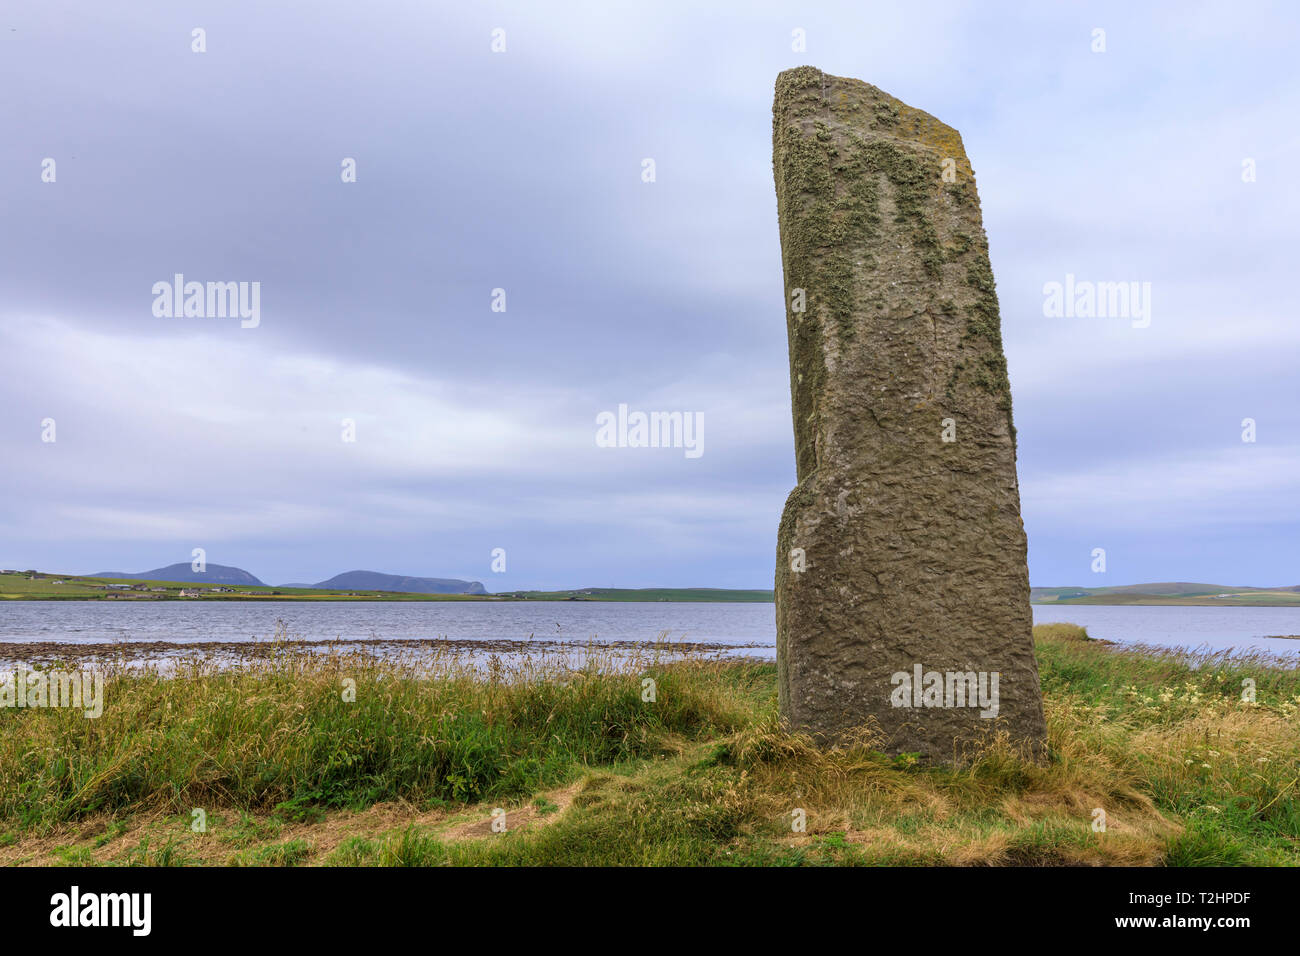 Regardez dans le Loch monolithe en pierre de Stenness, Ecosse, Europe Banque D'Images